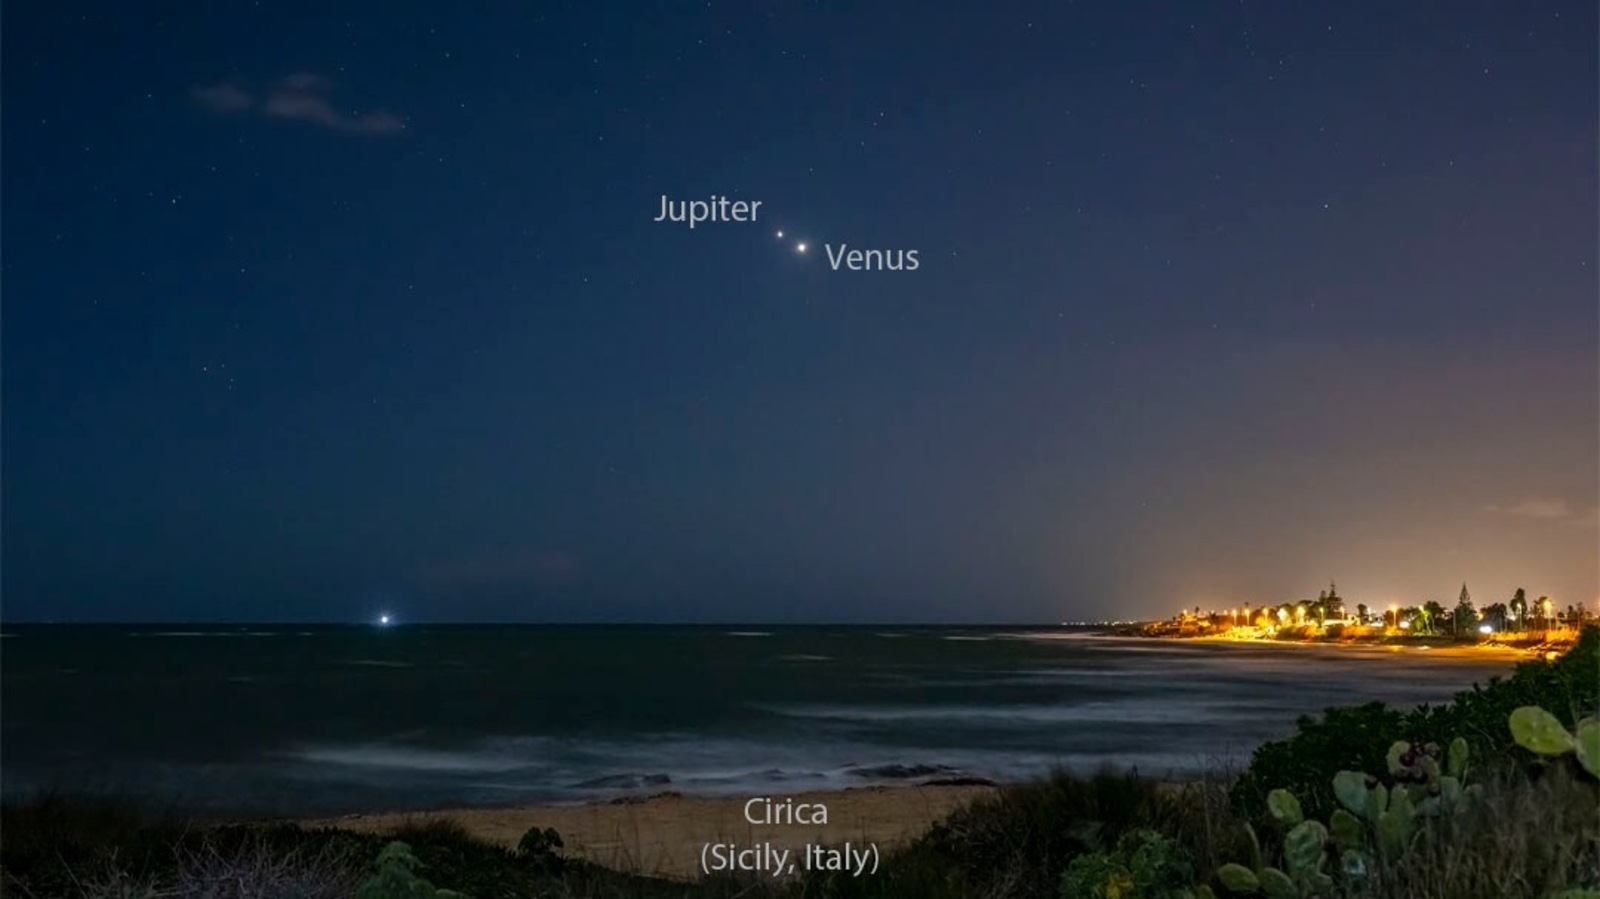 Imagen astronómica de la NASA hoy, 5 de marzo de 2023: un encuentro asombroso entre Venus y Júpiter